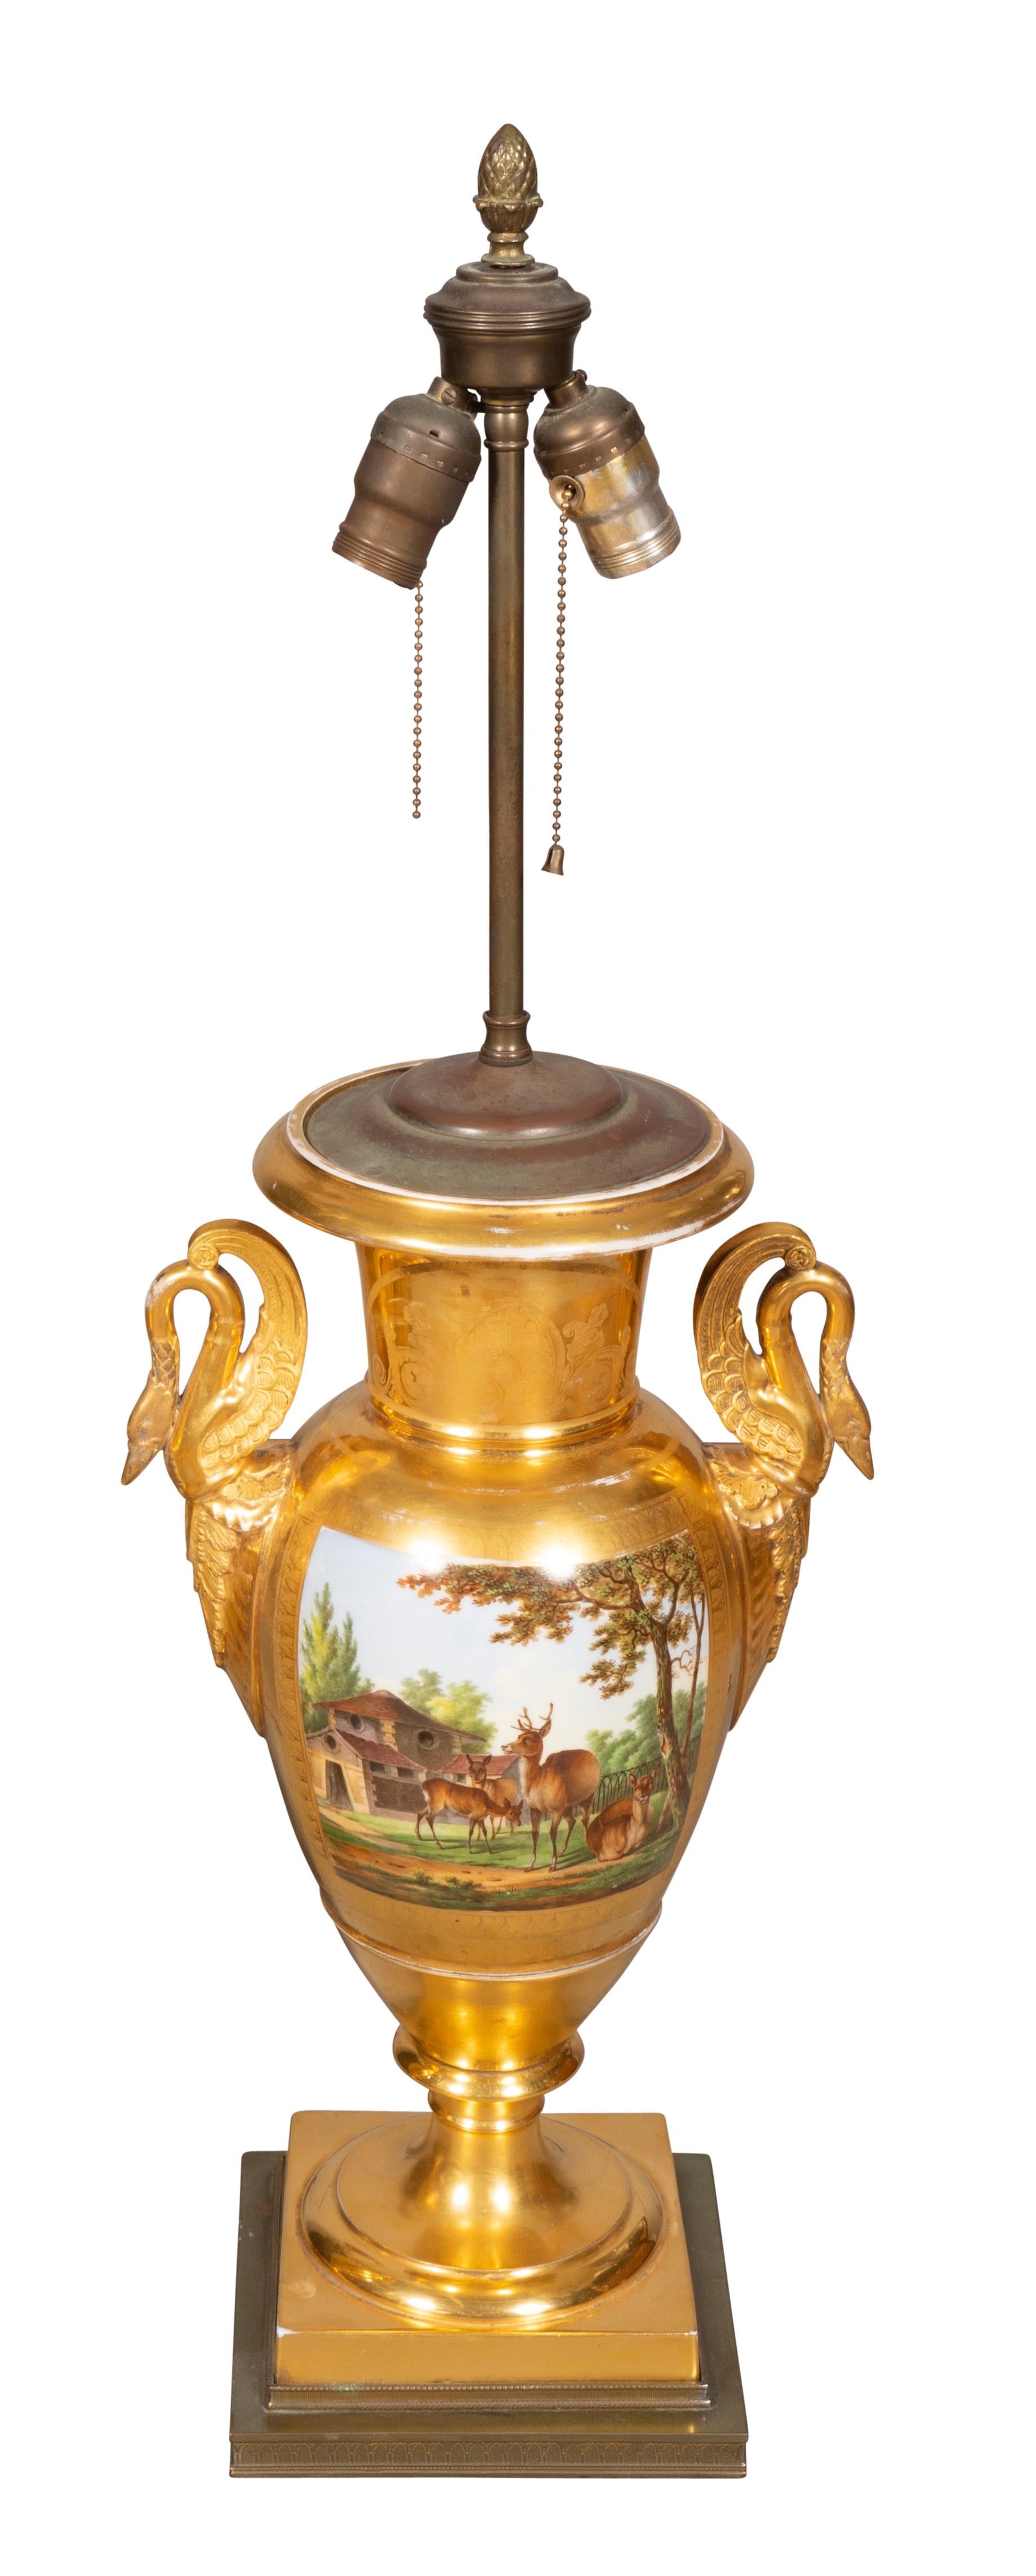 Altes Pariser Porzellan aus der napoleonischen Zeit, verziert mit Bauernhoftieren und einer Scheune. Mit Schwanengriffen. Wunderschön bemalt und feuervergoldet. Jetzt als Lampen montiert. 